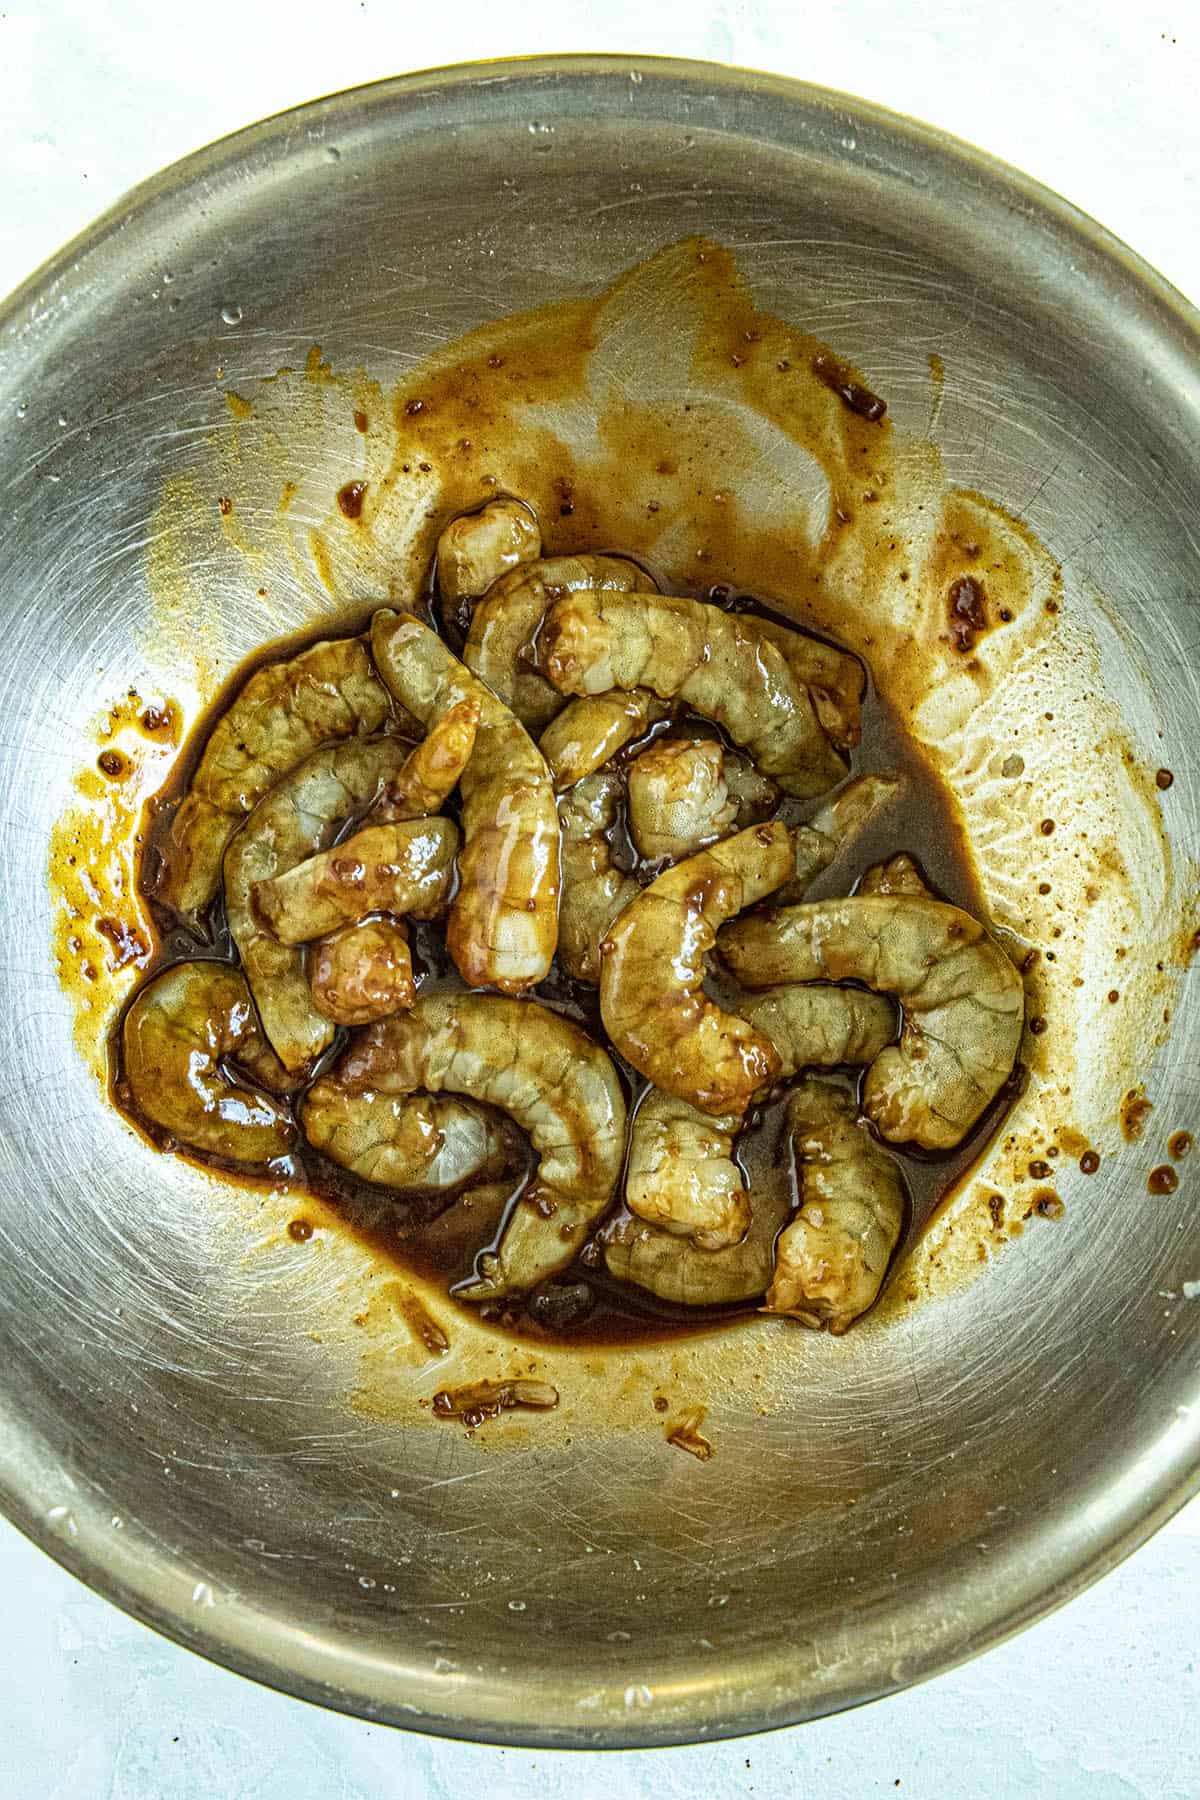 Marinating shrimp to make Kung Pao Shrimp